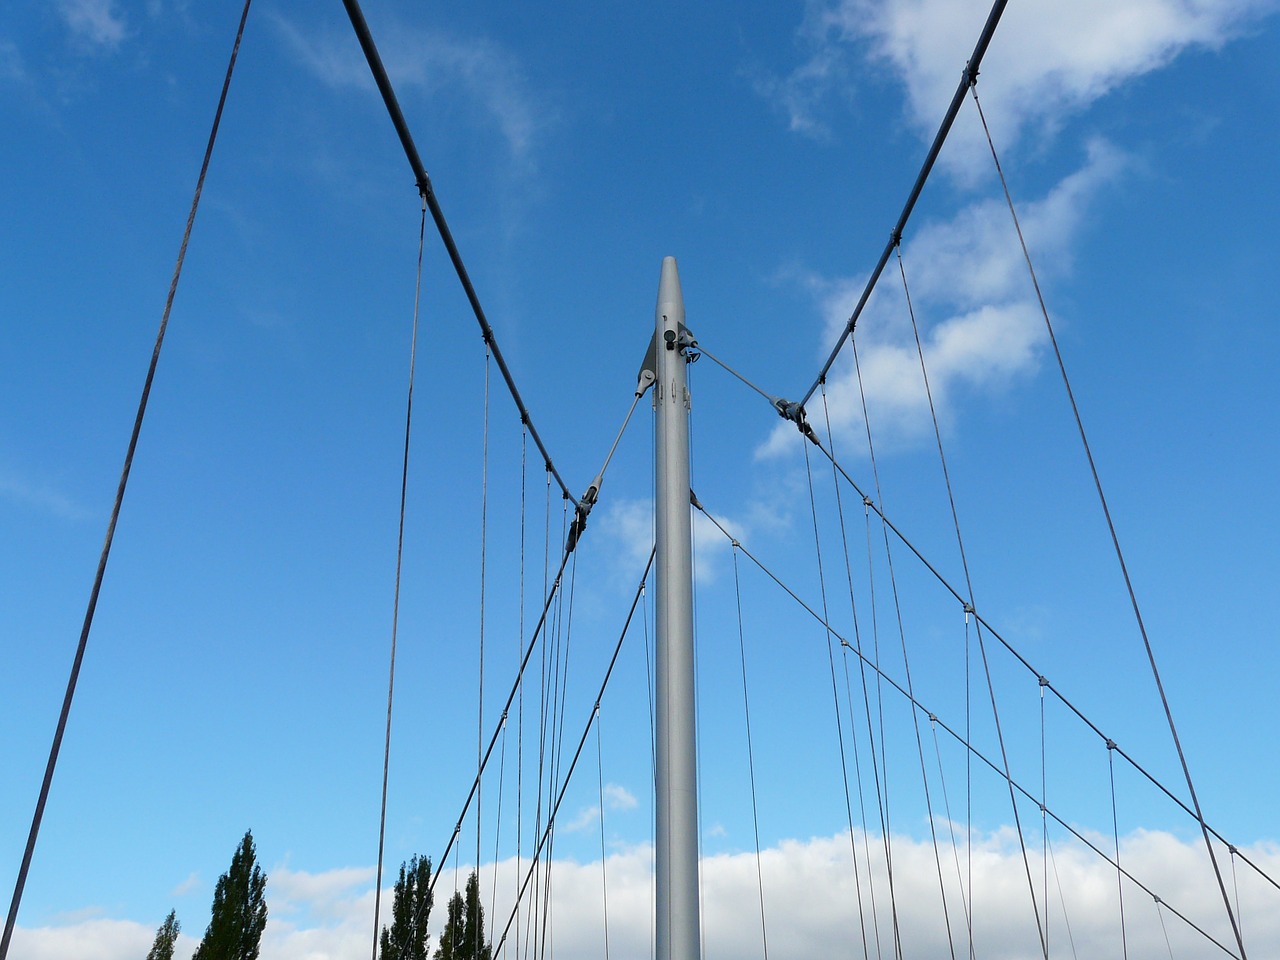 suspension bridge masts bridge free photo